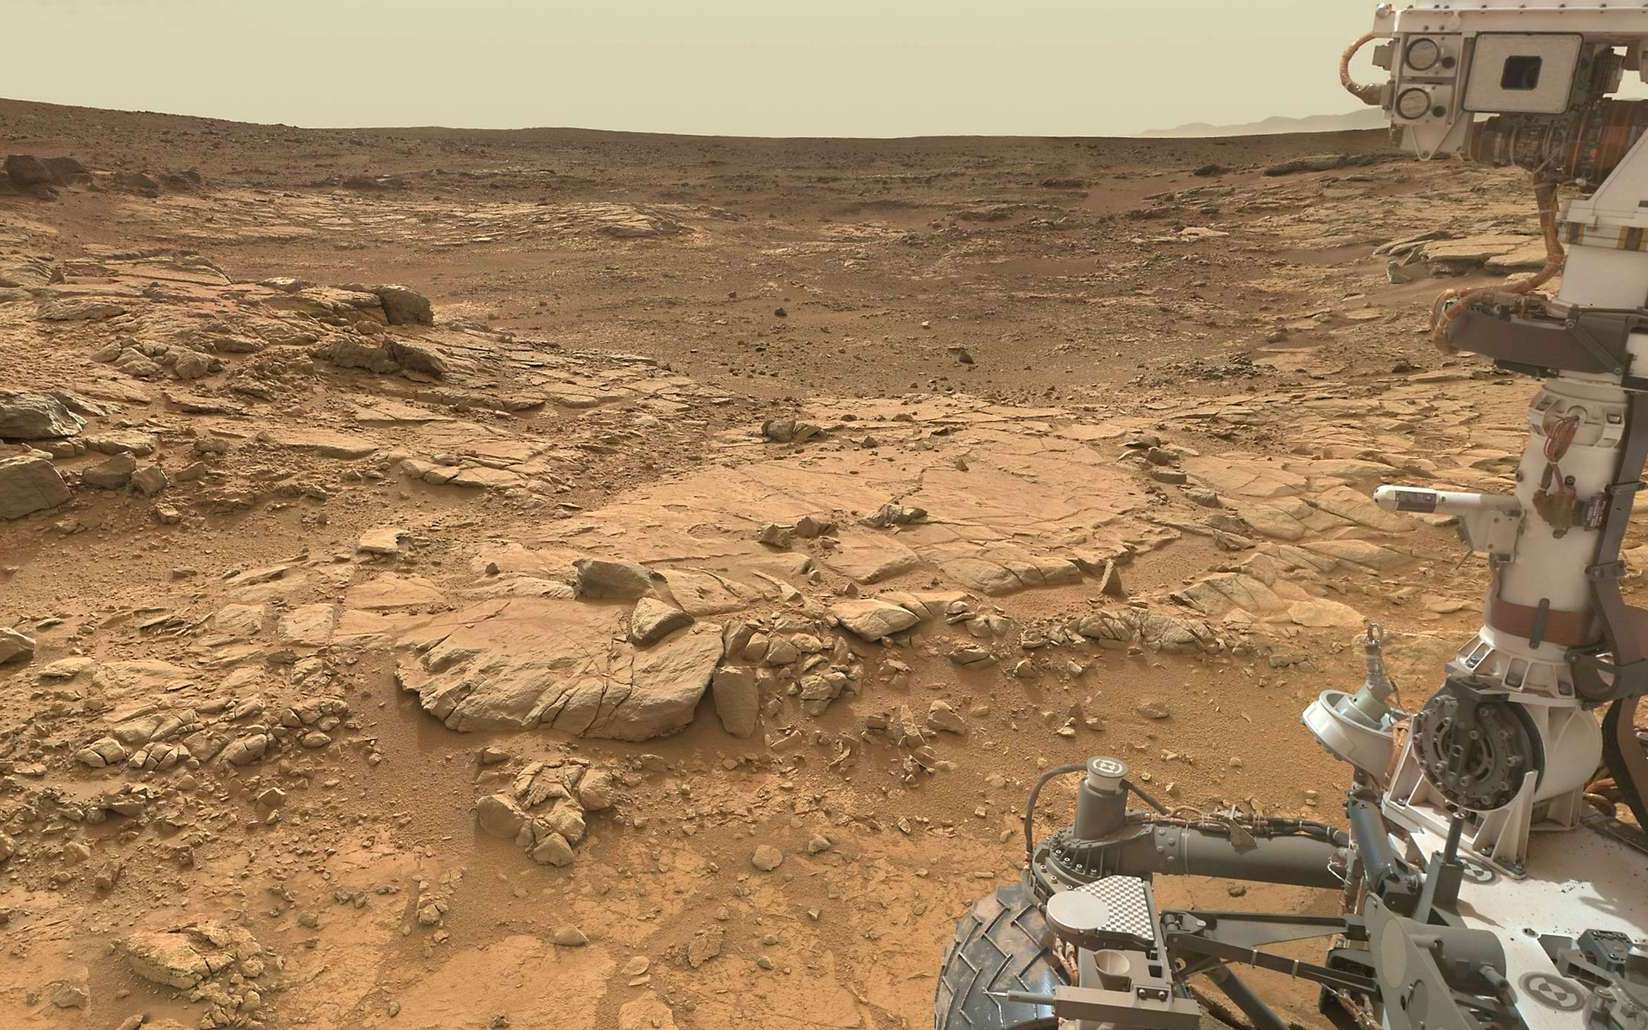 Le rover arpente le paysage martien depuis 10 ans maintenant. © Nasa